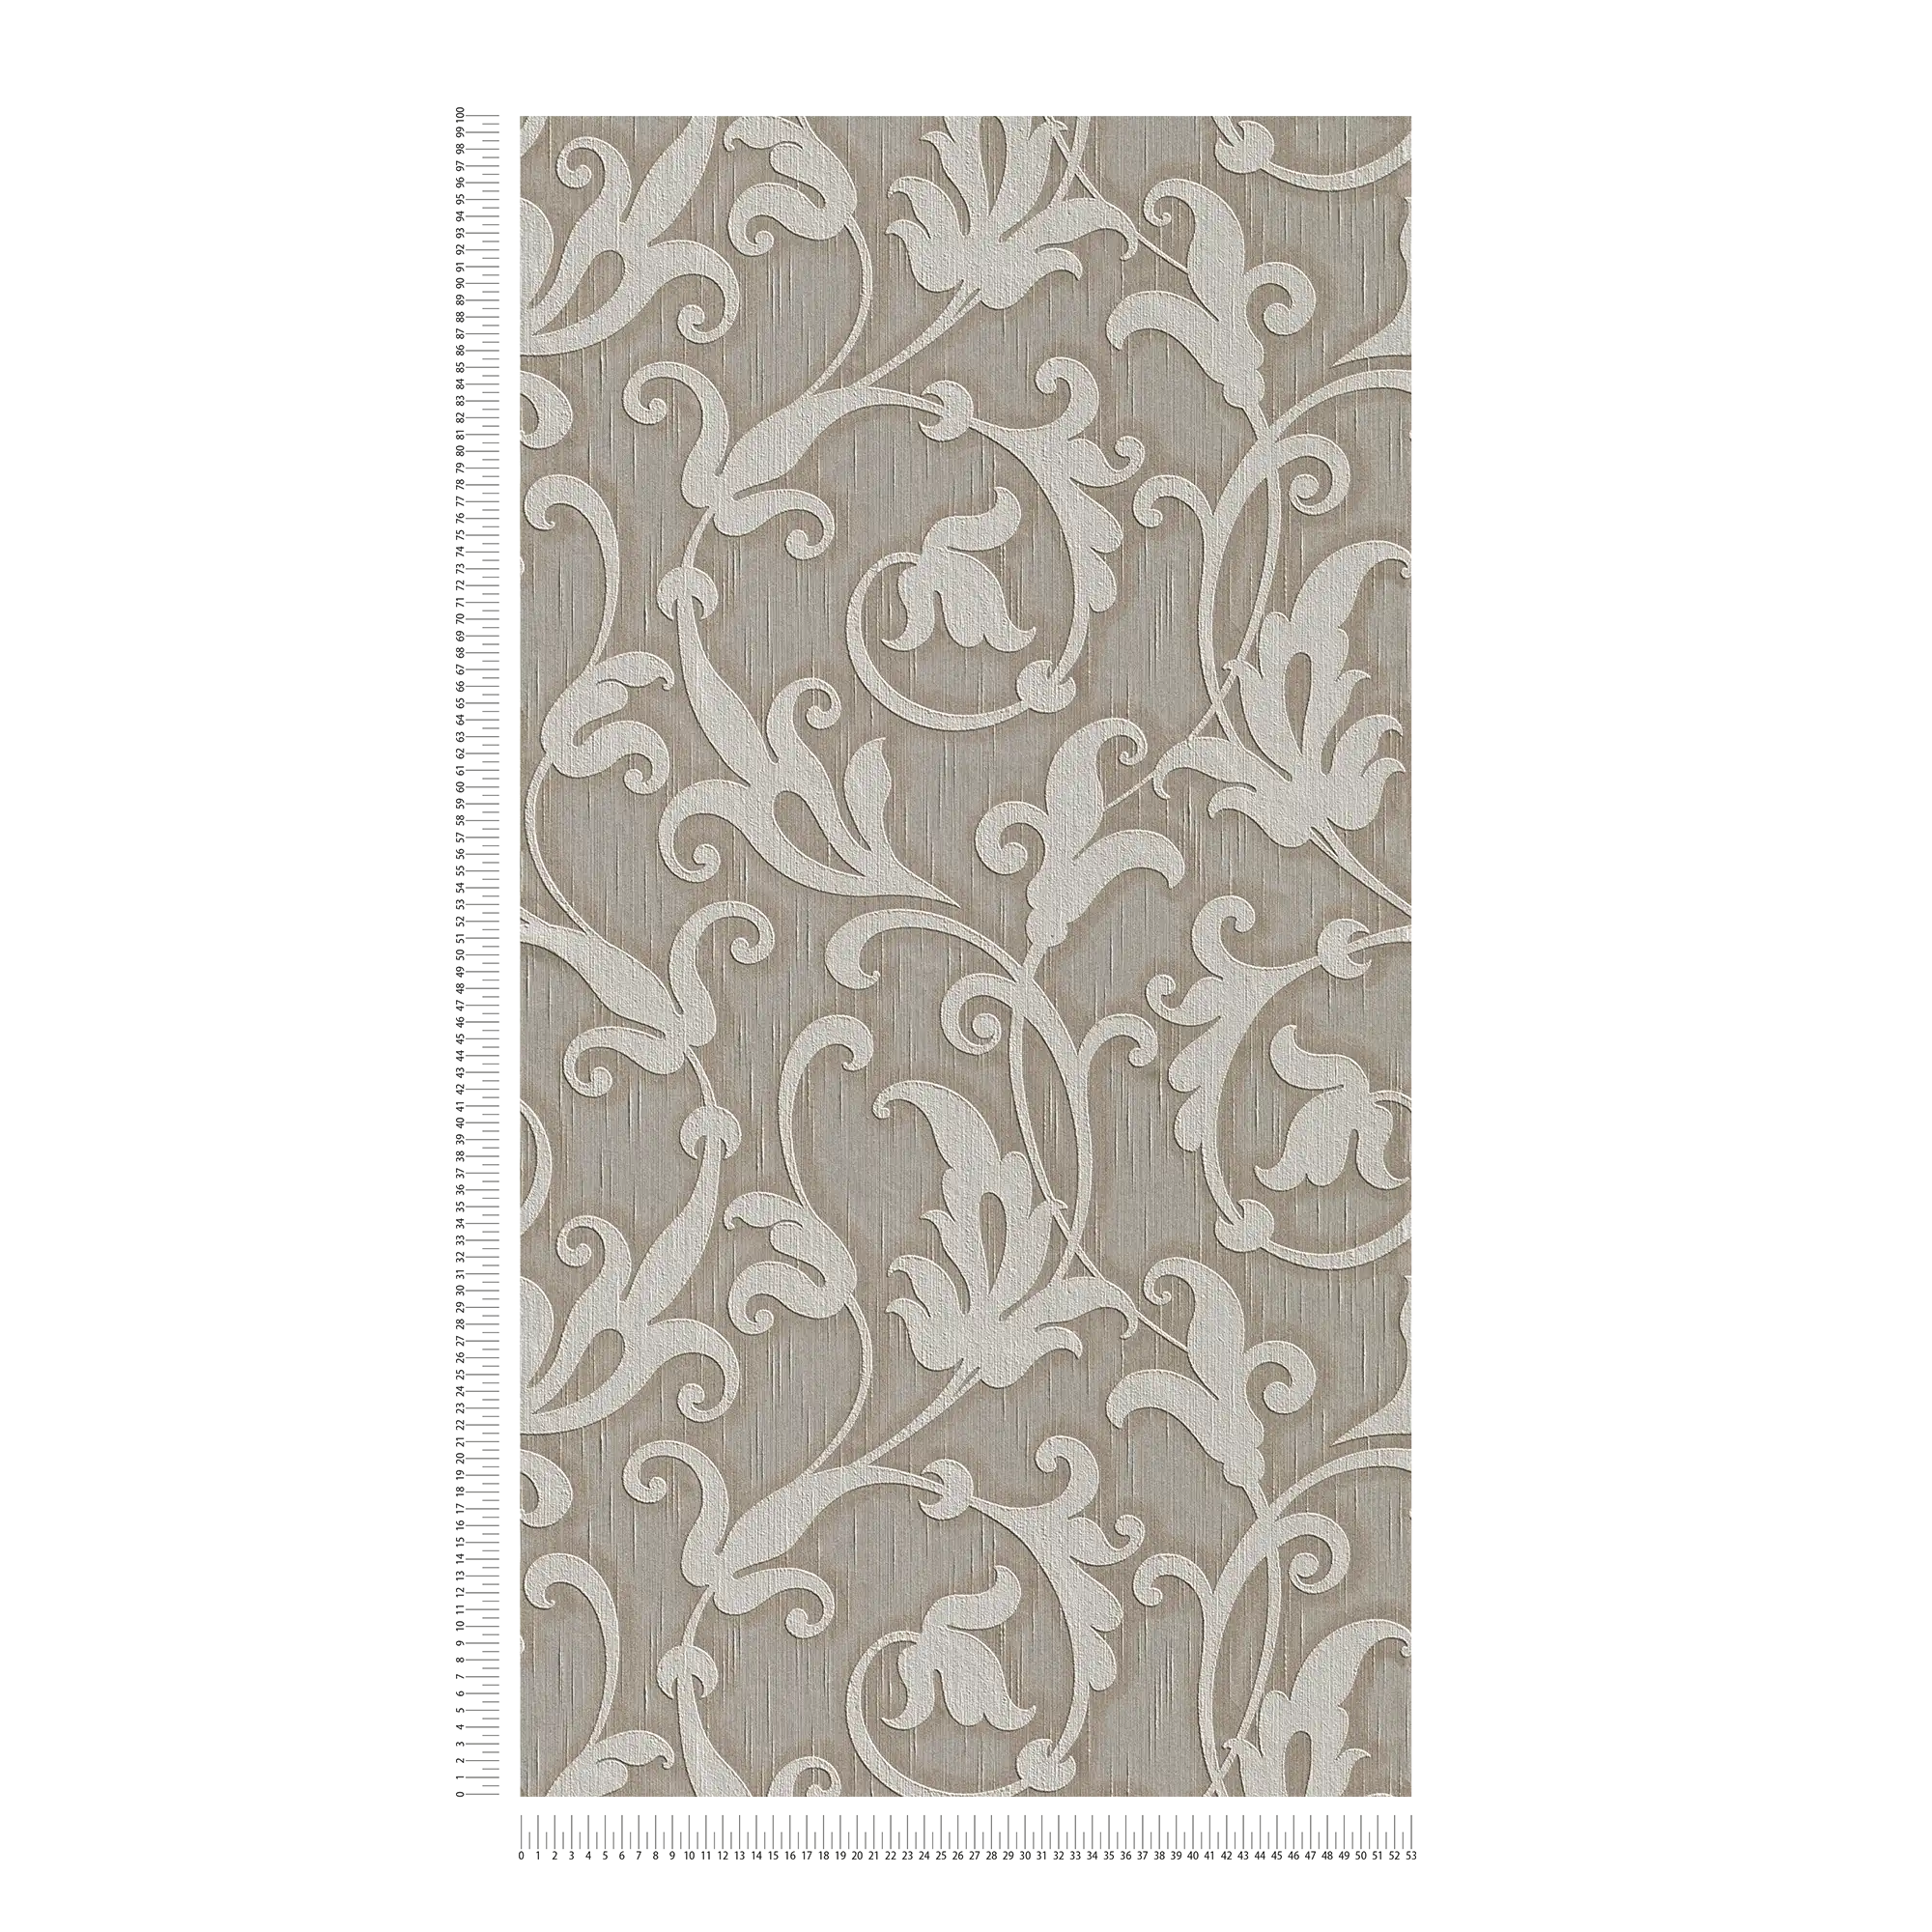             papier peint en papier ornemental Premium avec structure textile & motif en relief - gris, marron
        